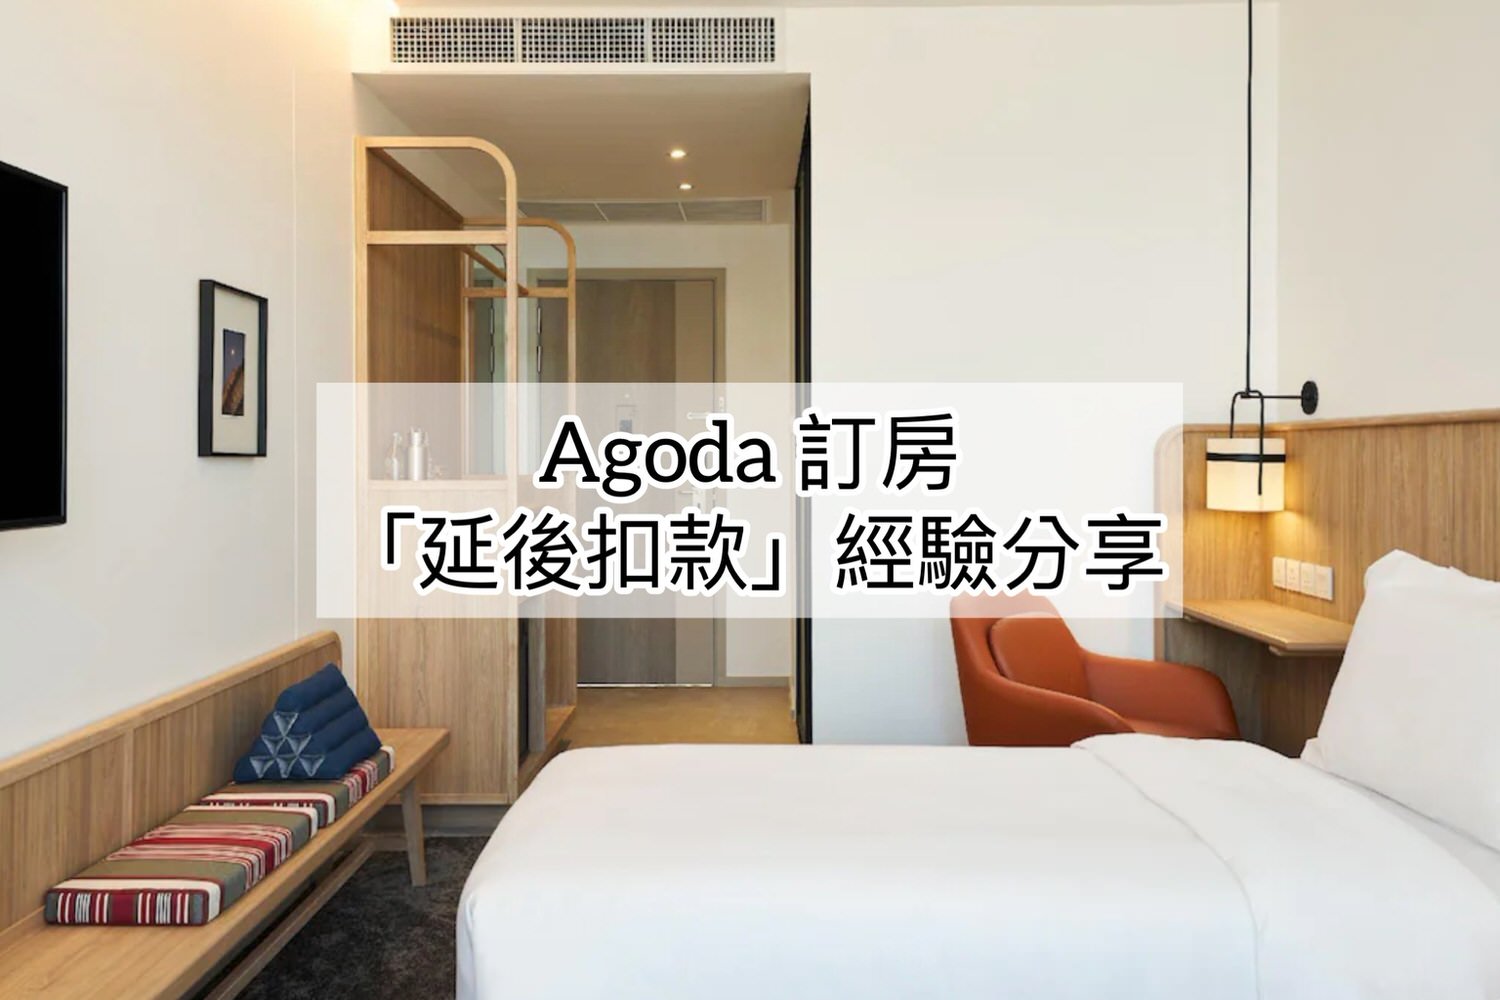 Agoda訂房「延後扣款」價格比較貴或便宜之曼谷訂房經驗分享